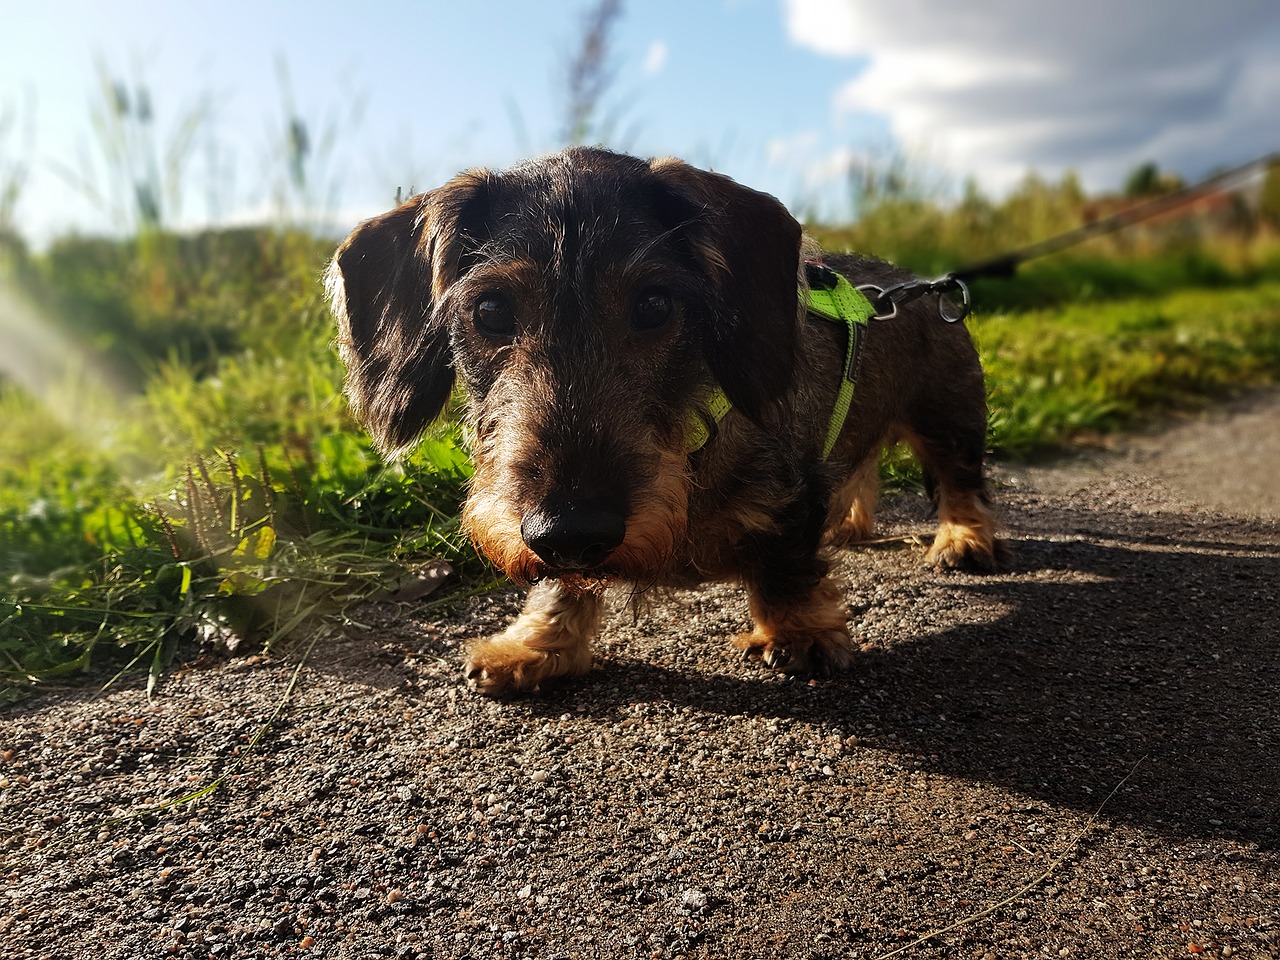 Hundeforum Rauhaardackel schaut in die Kamera, während er über einen Weg läuft, im Hintergrund Wiesen und blauer Himmel